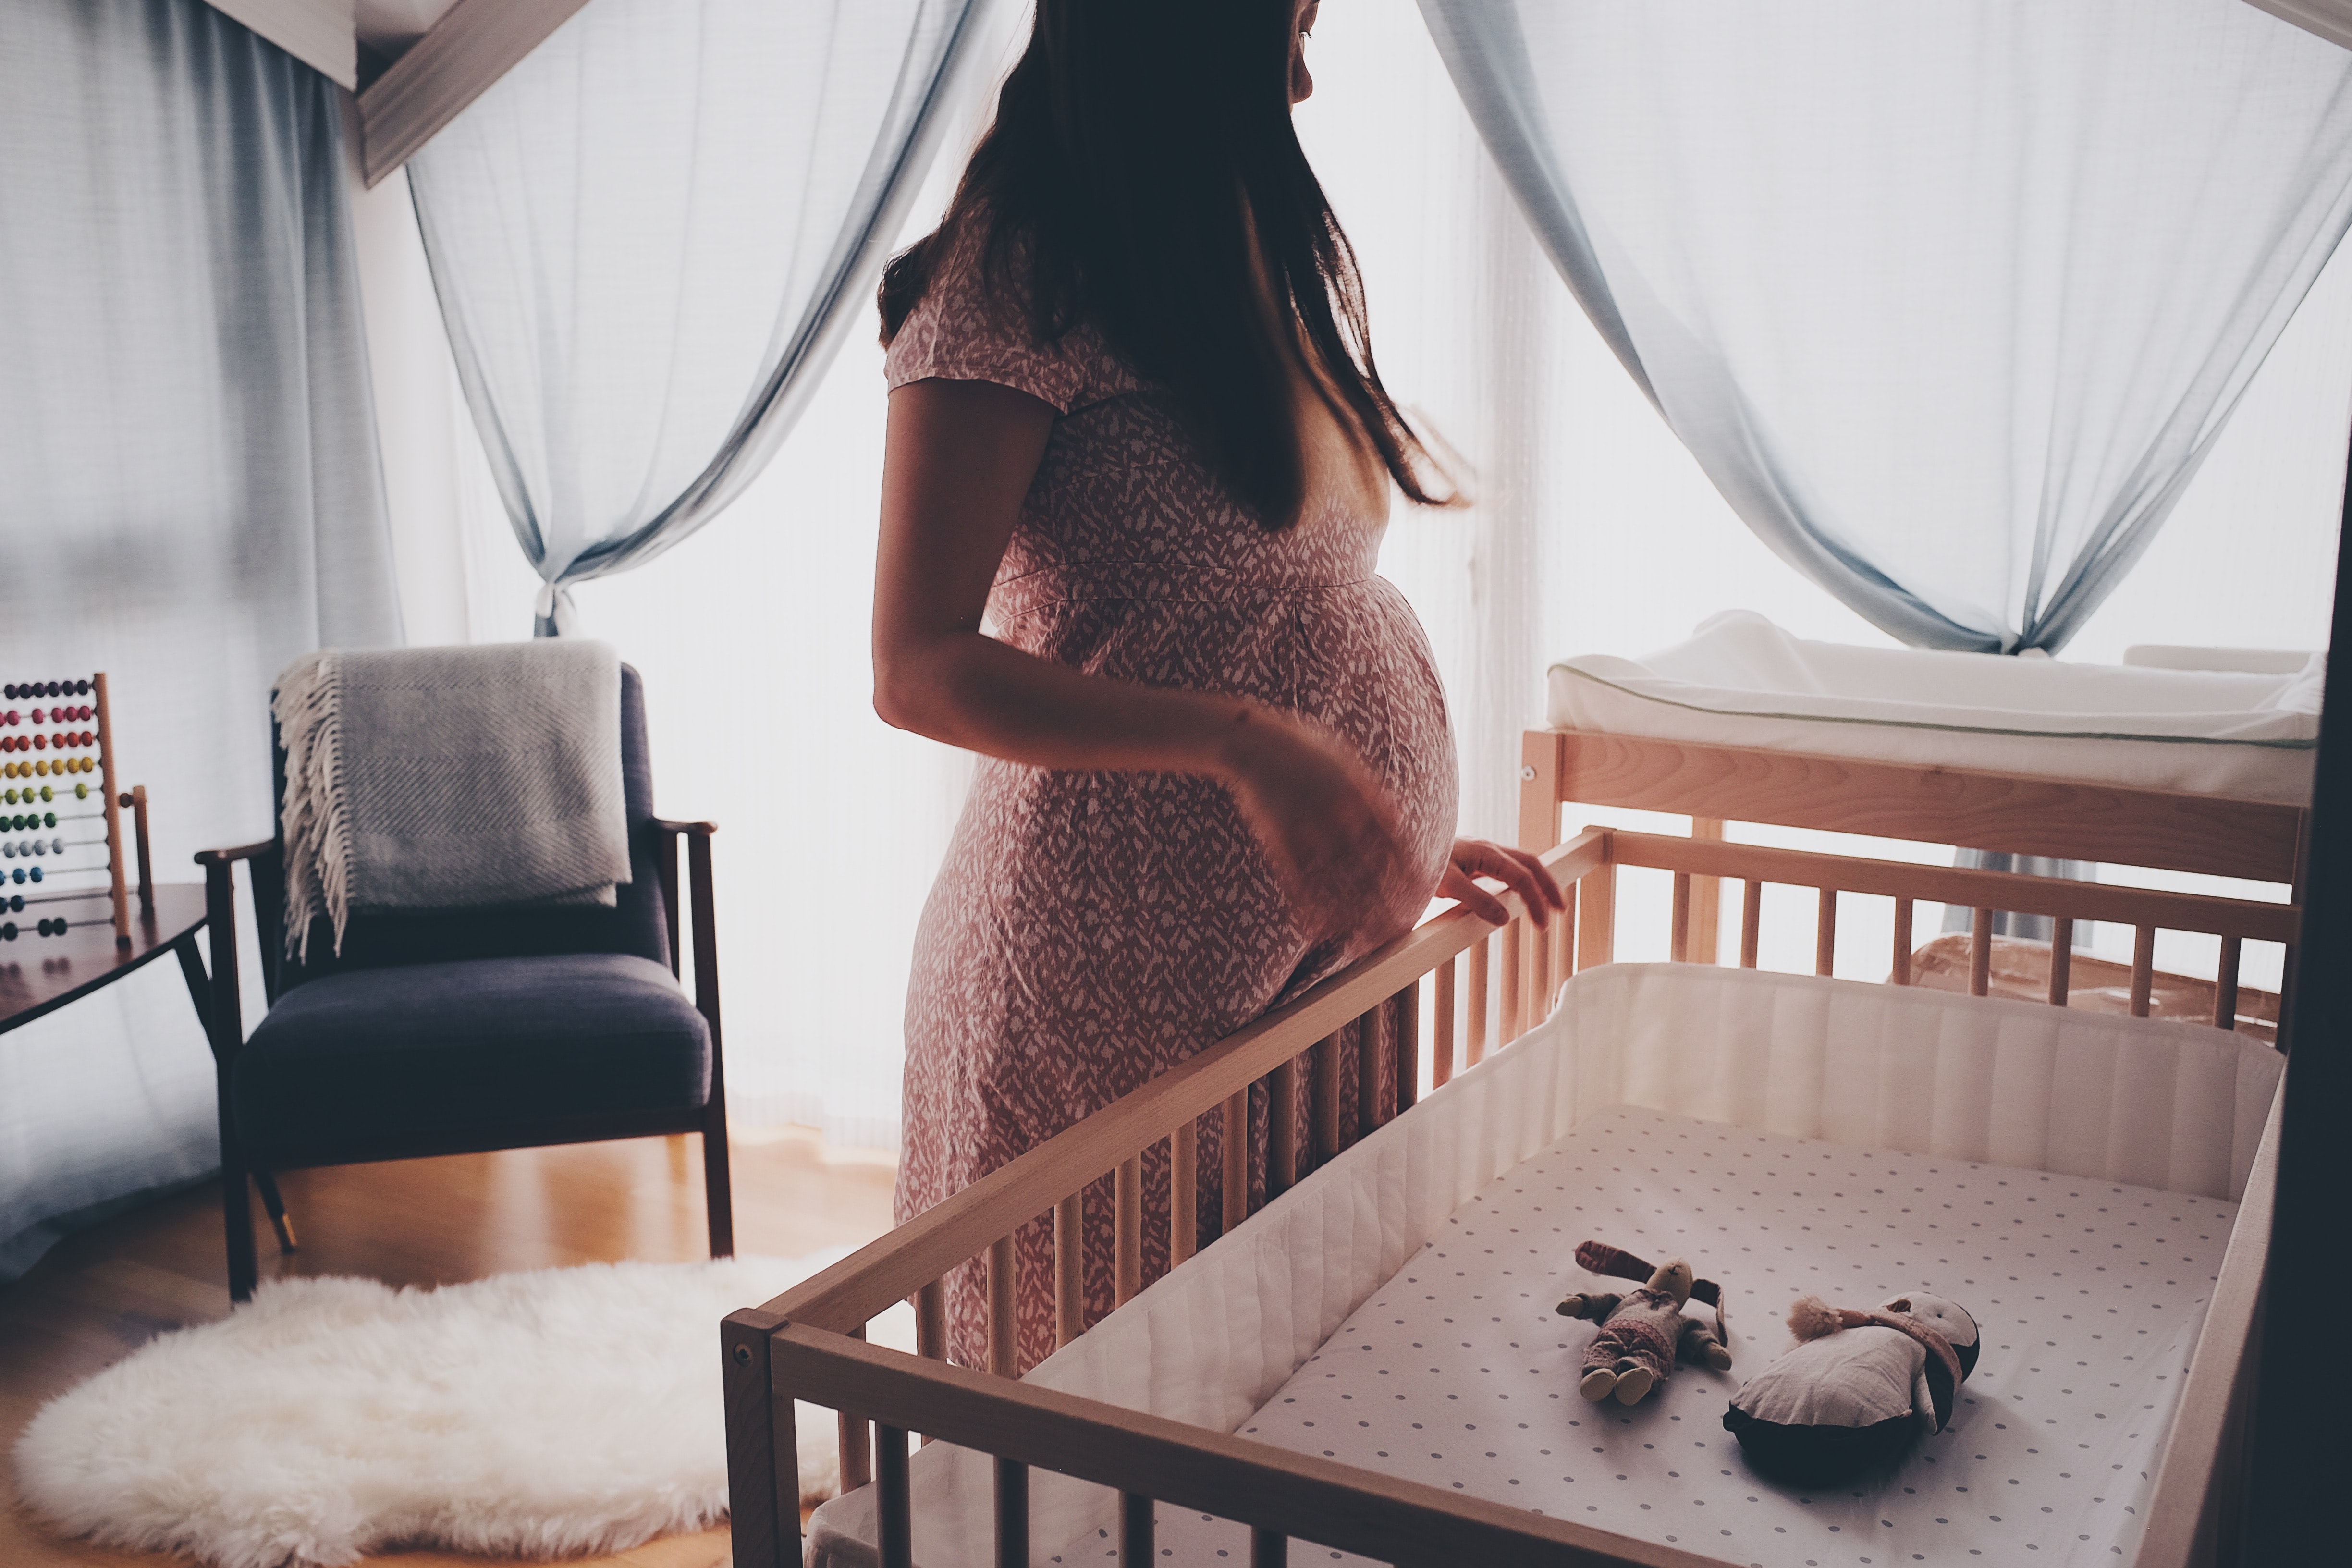 Секс во время беременности: быть или не быть.